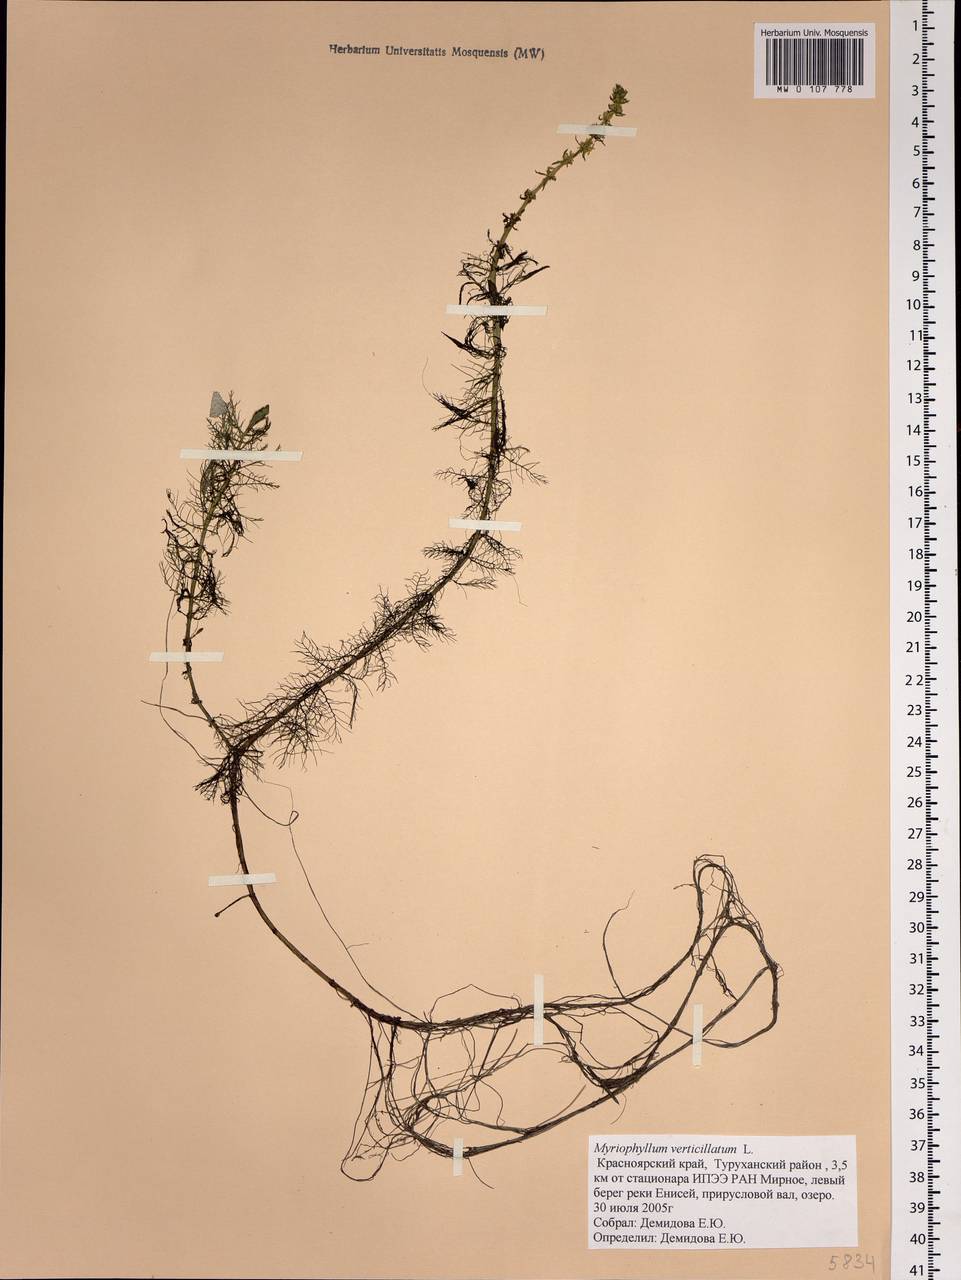 Myriophyllum verticillatum L., Siberia, Central Siberia (S3) (Russia)